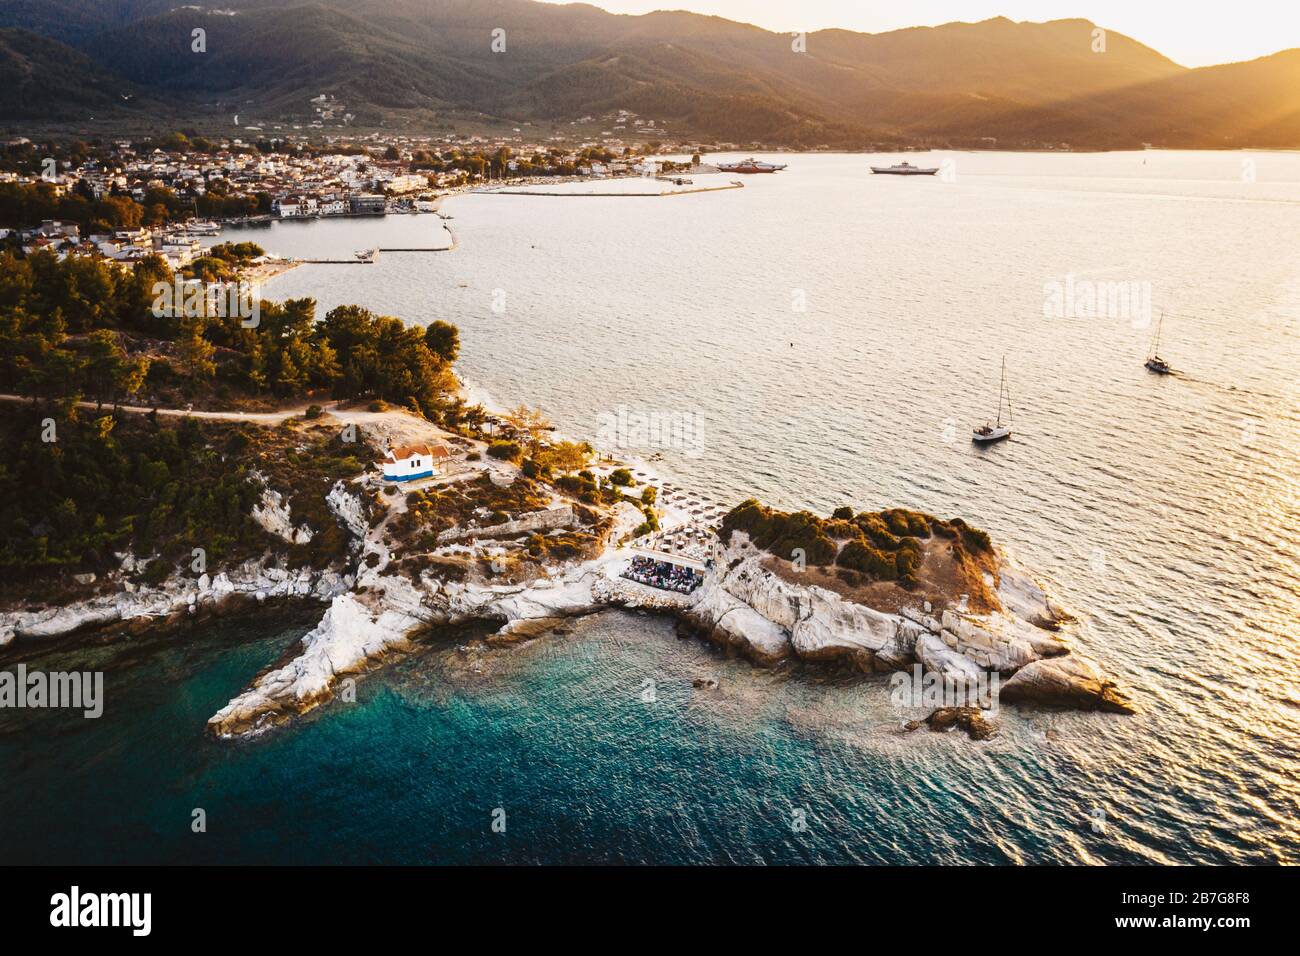 Coucher de soleil sur l'île de Thassos, Grèce avec Karnagio Beach visible Banque D'Images